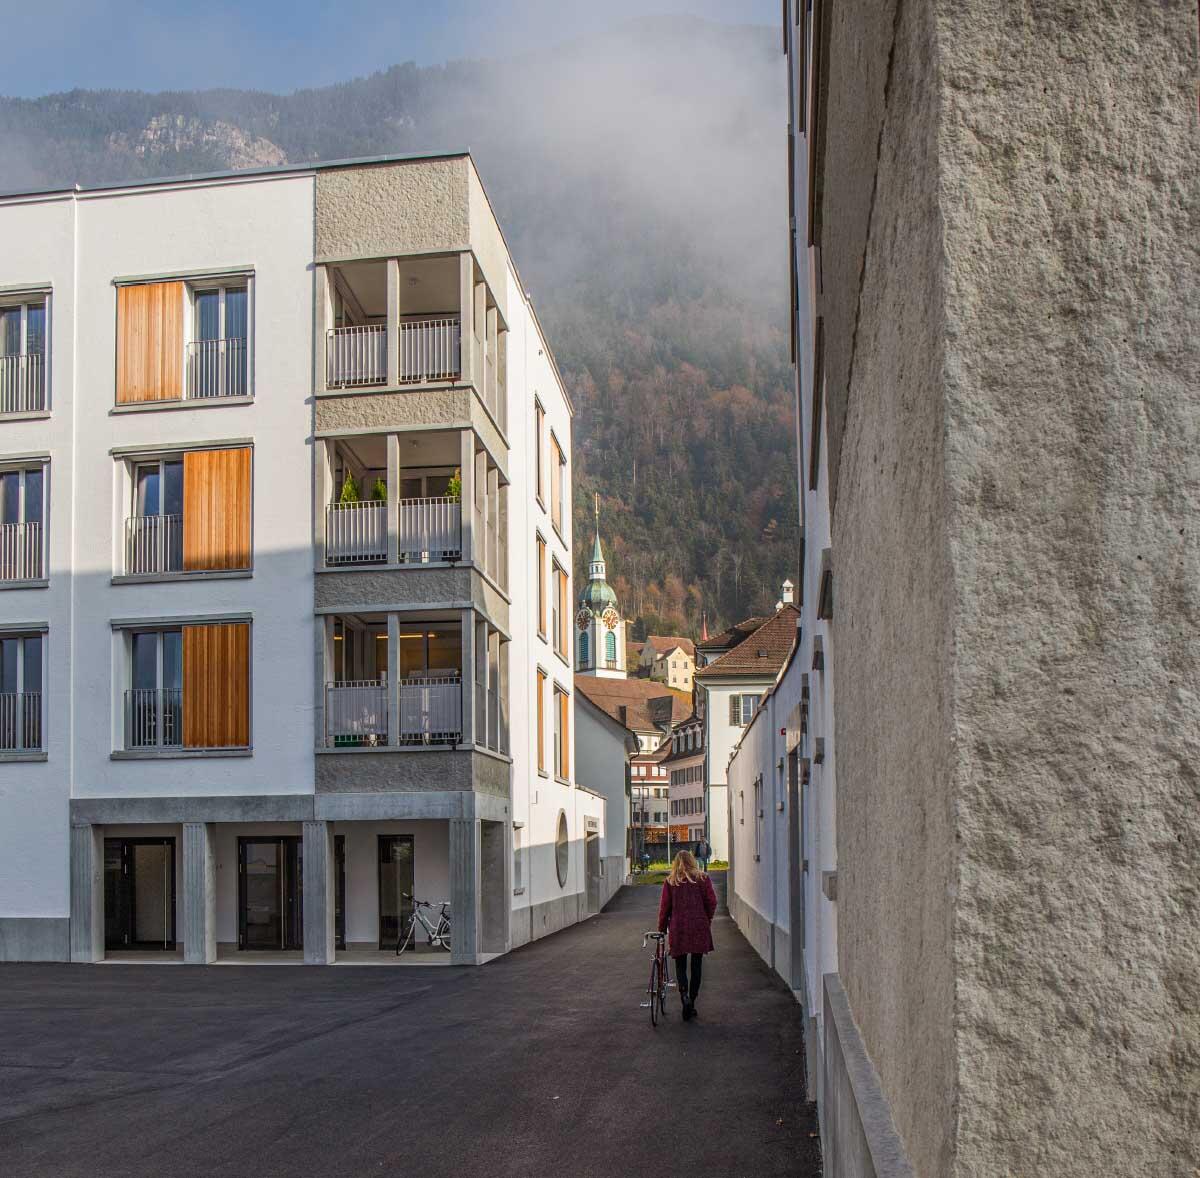 Die Setzung der Neubauten und die hohen Mauern der Gassen eröffnen gezielte Blicke auf Altstadt und Bergwelt.
Bild: Andrea Kuhn